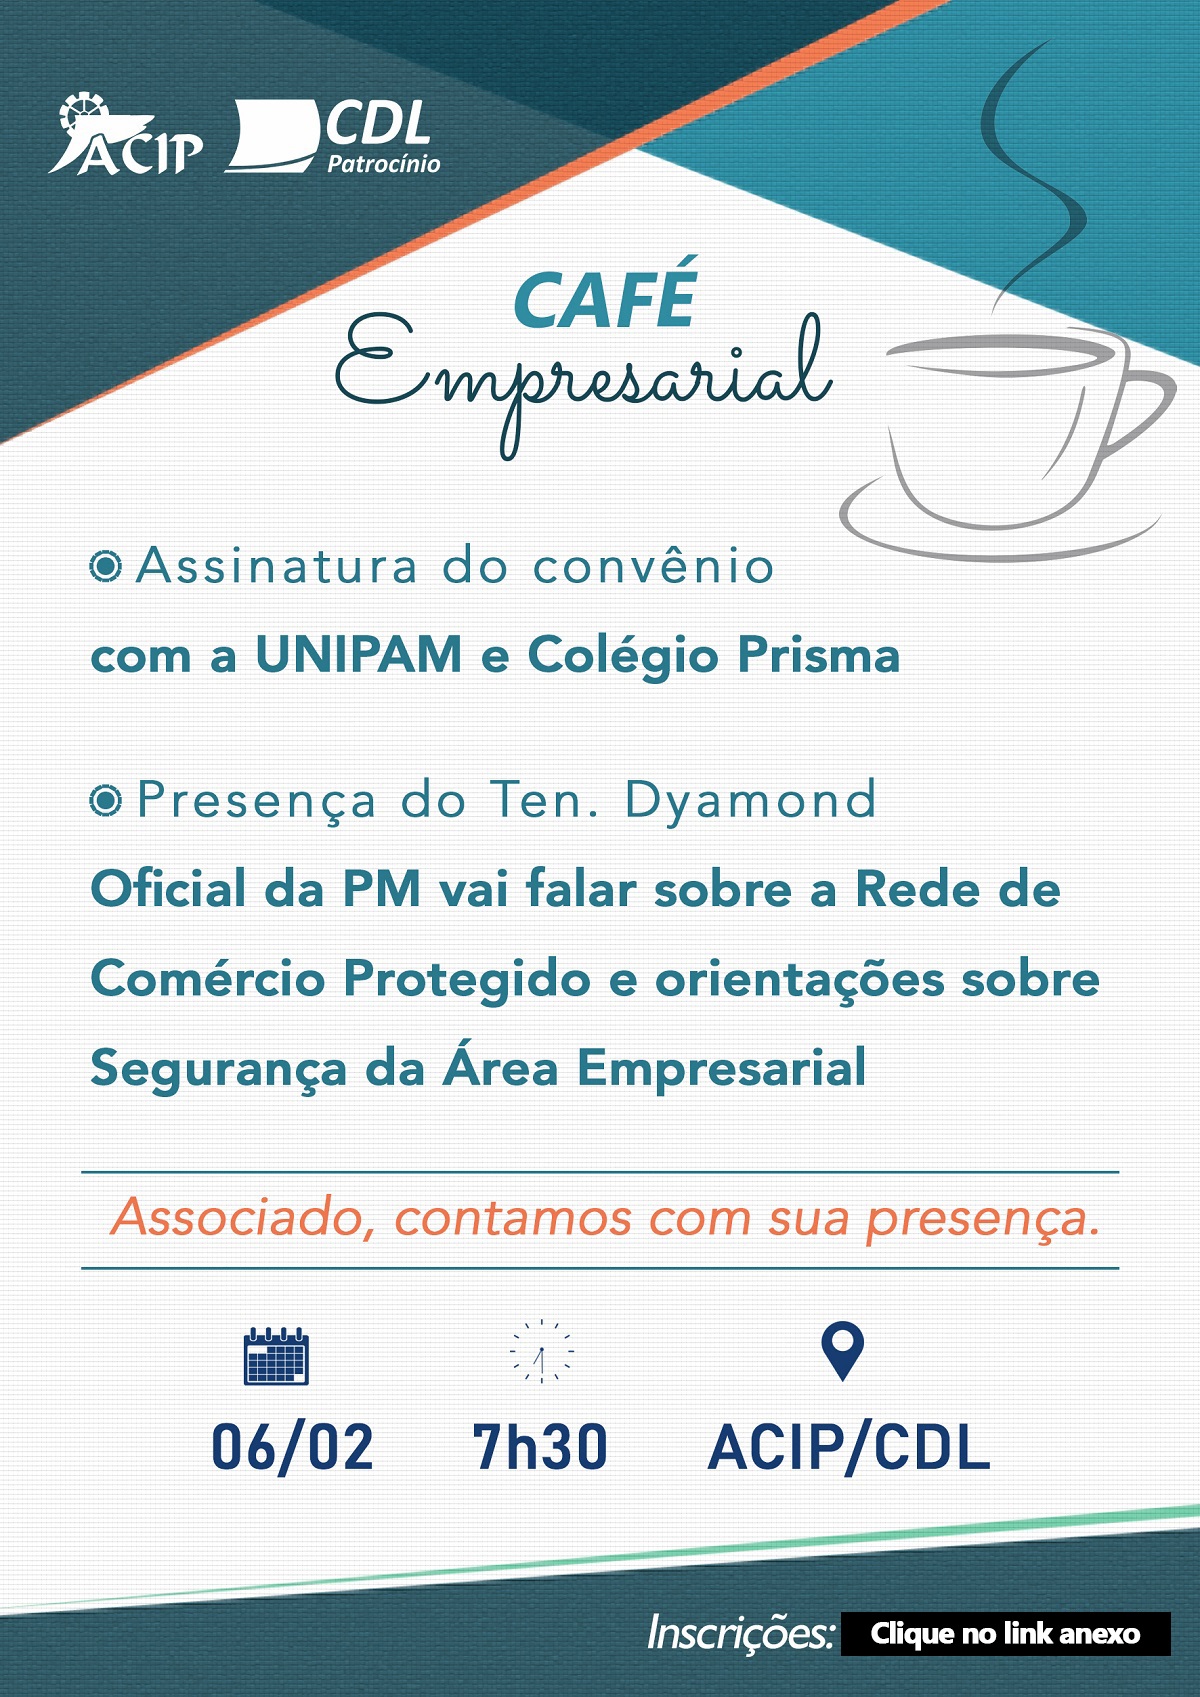 CAFE-EMPRESARIAL-FEVEREIRO comlogos-oooook